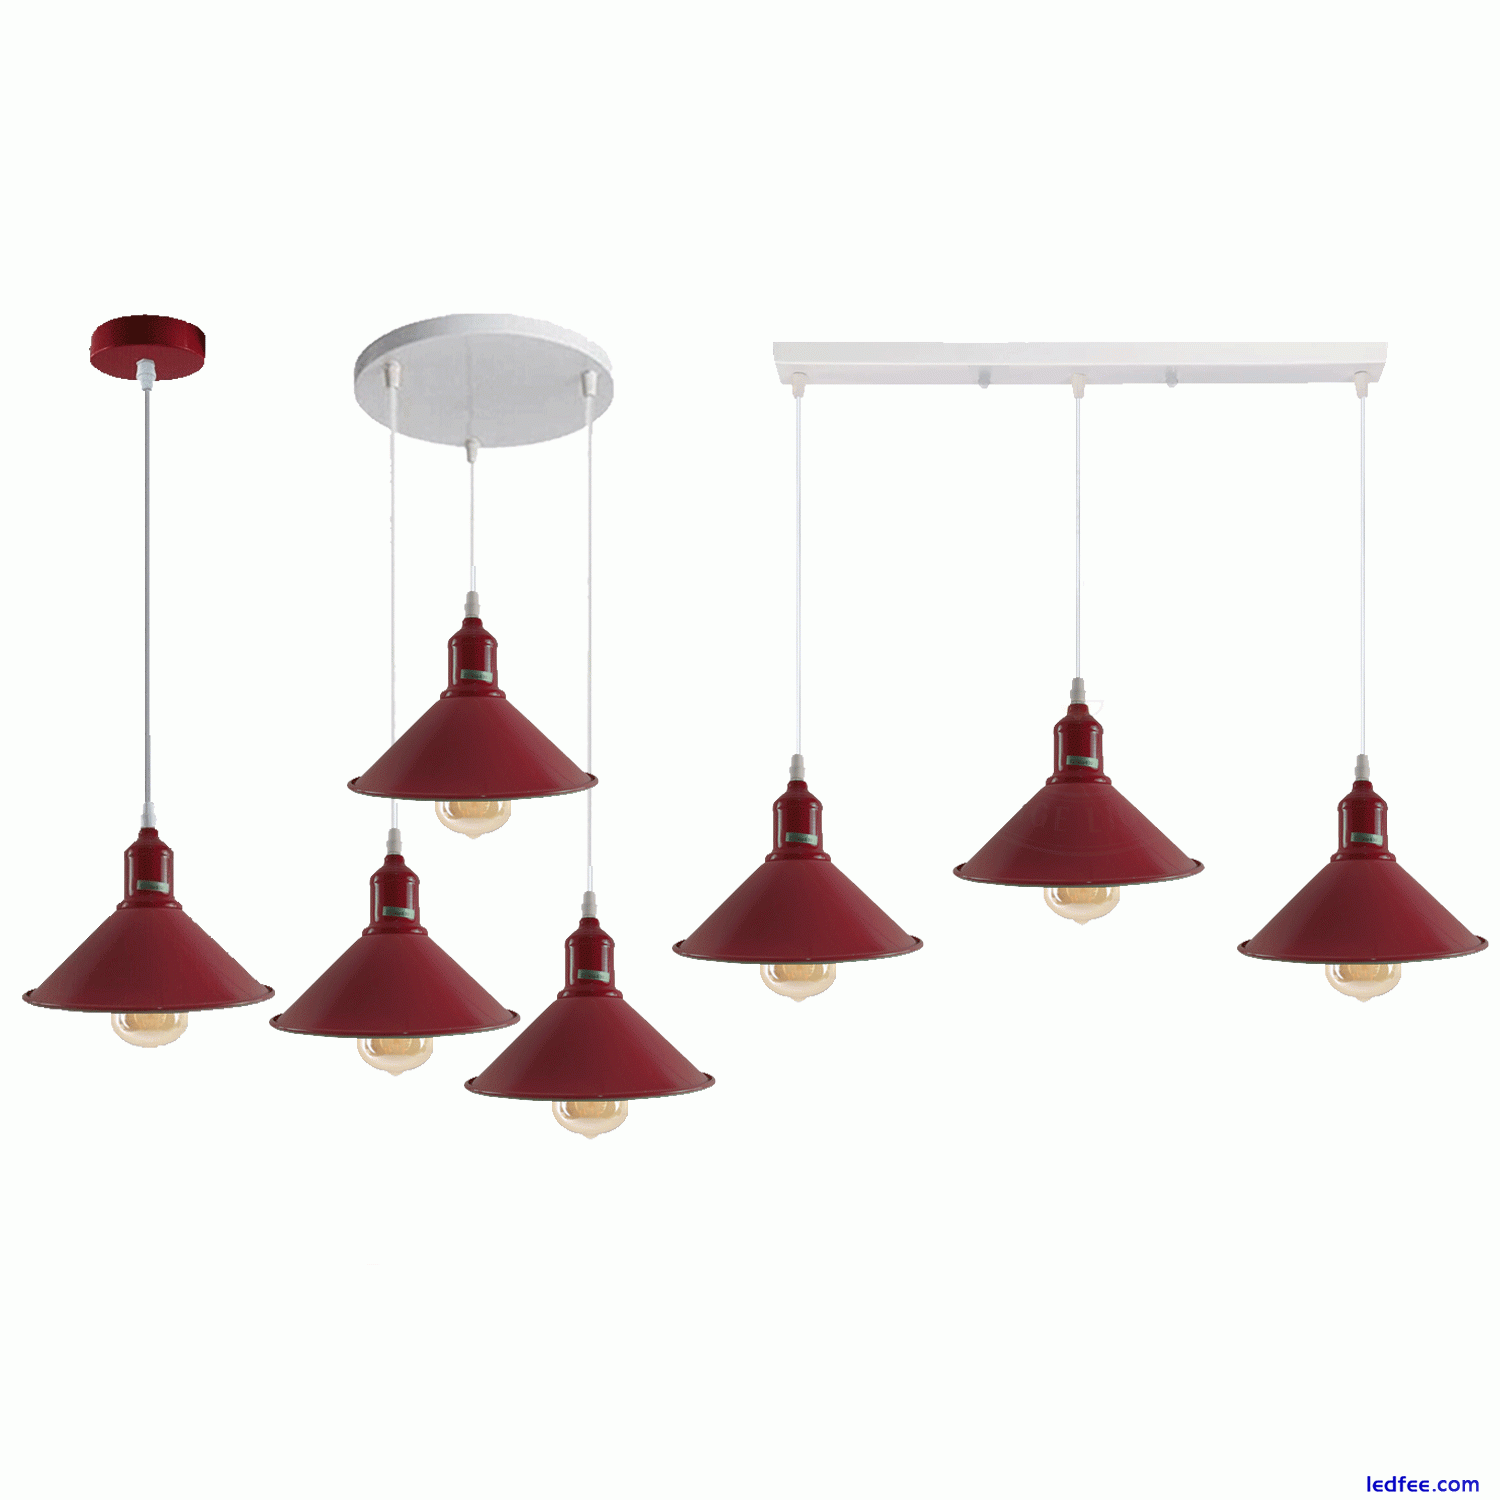 Vintage Industrial Pendant Light Modern Hanging Retro Lamp LED Ceiling Lights UK 5 